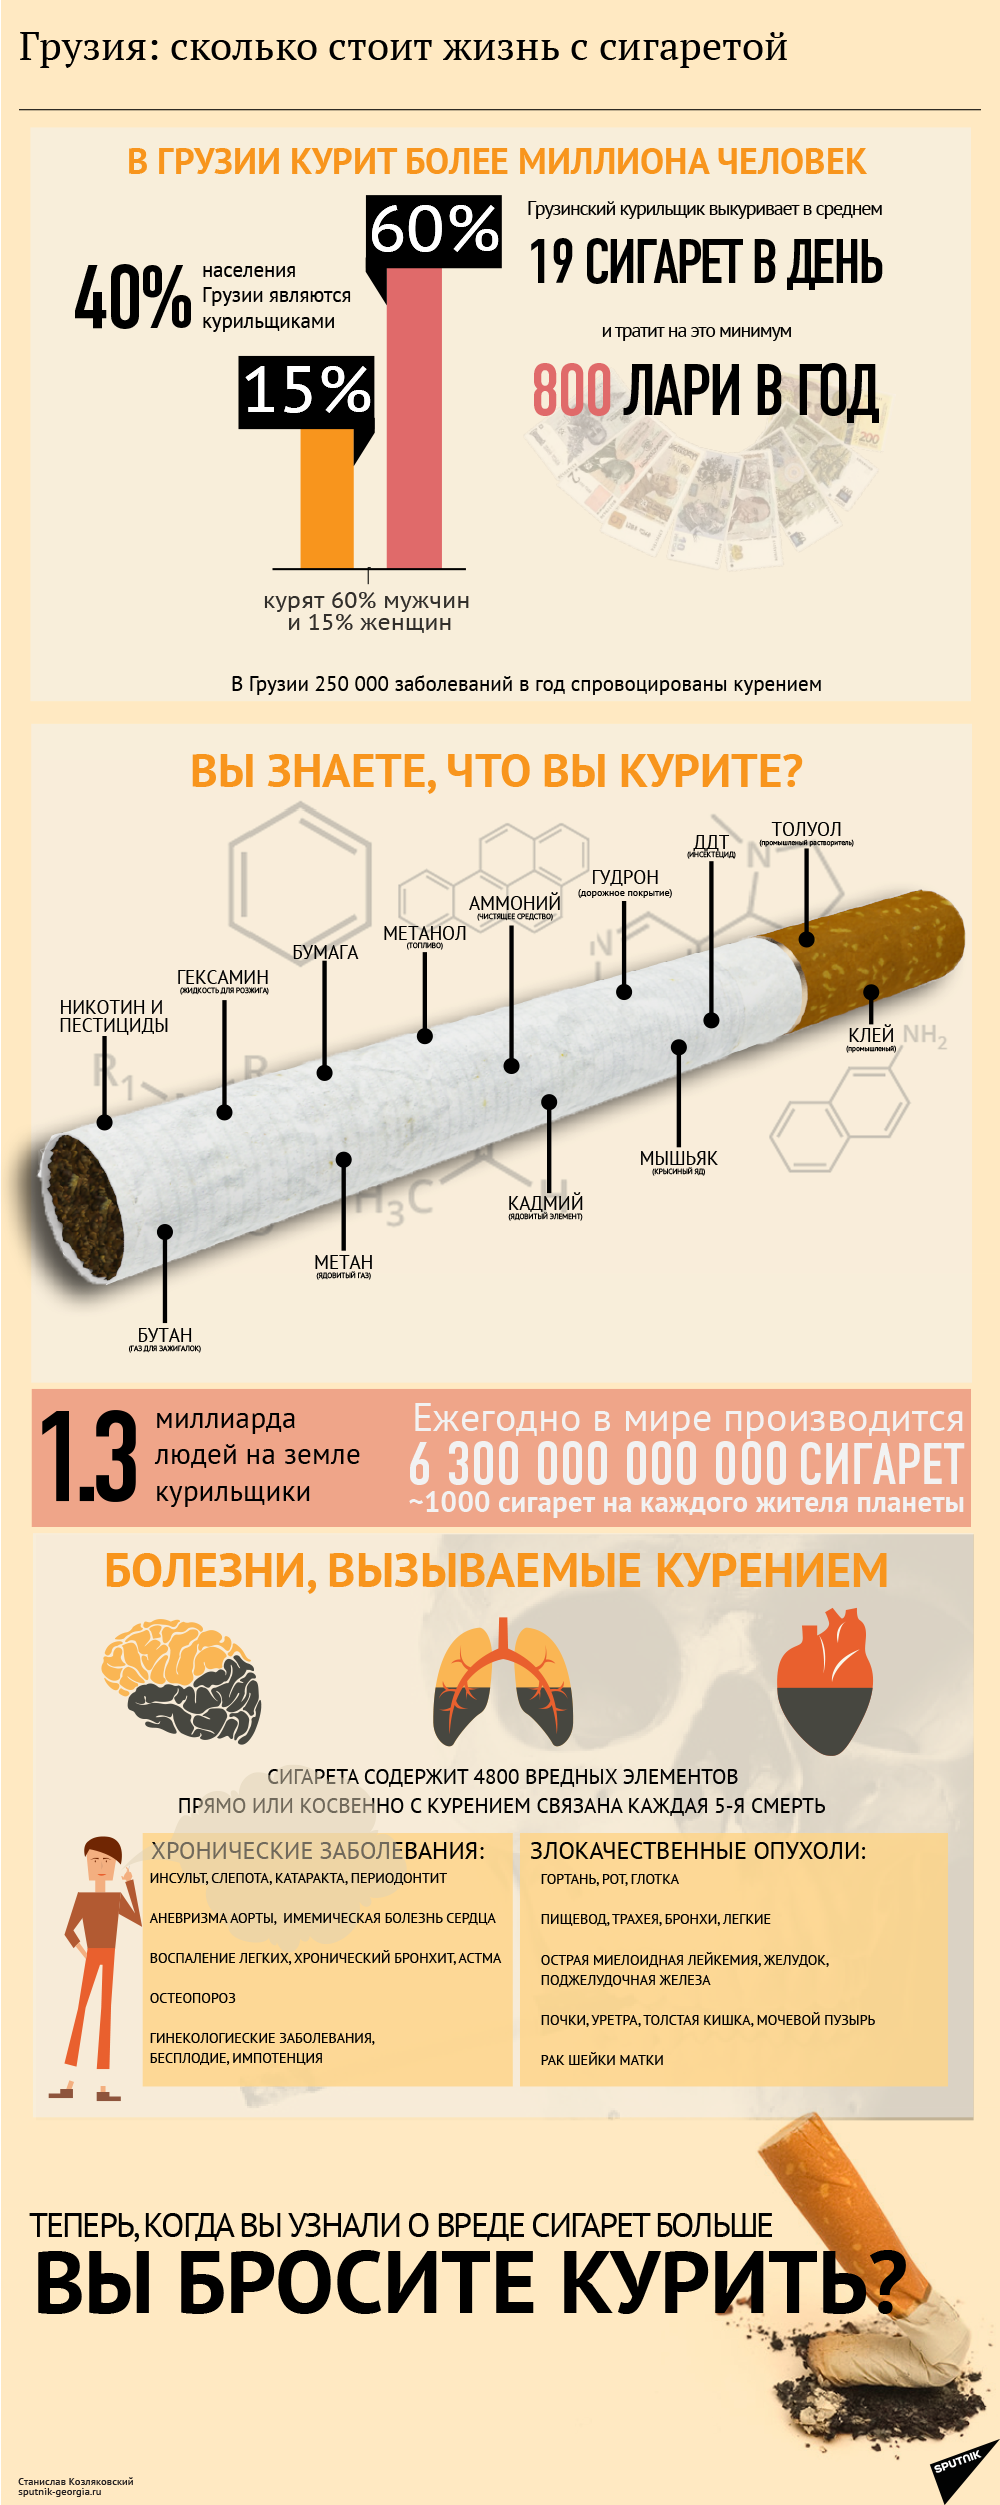 Сколько стоит жизнь с сигаретой - Sputnik Грузия